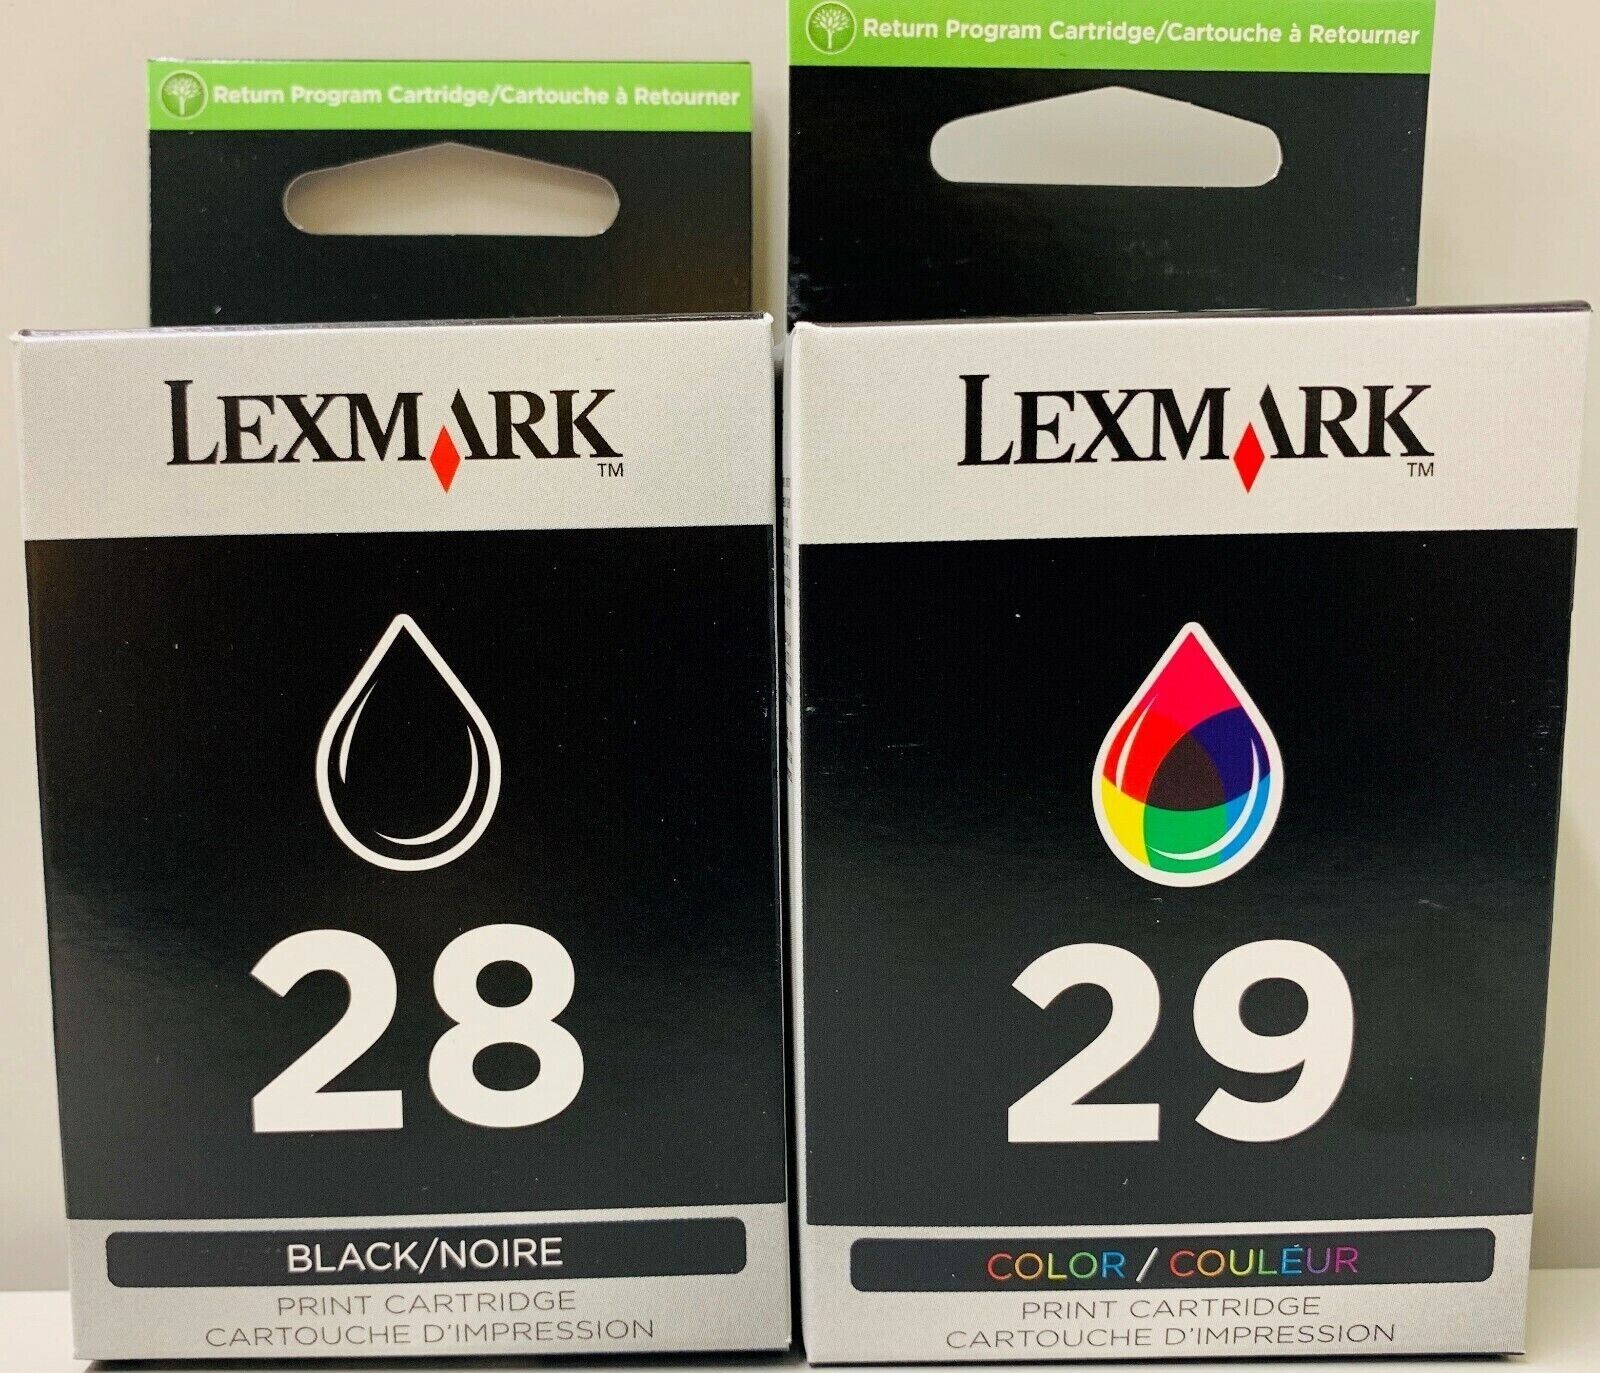 2 NEW Genuine Lexmark 28 Black 29 Color Inkjet Cartridges - SEALED BAG